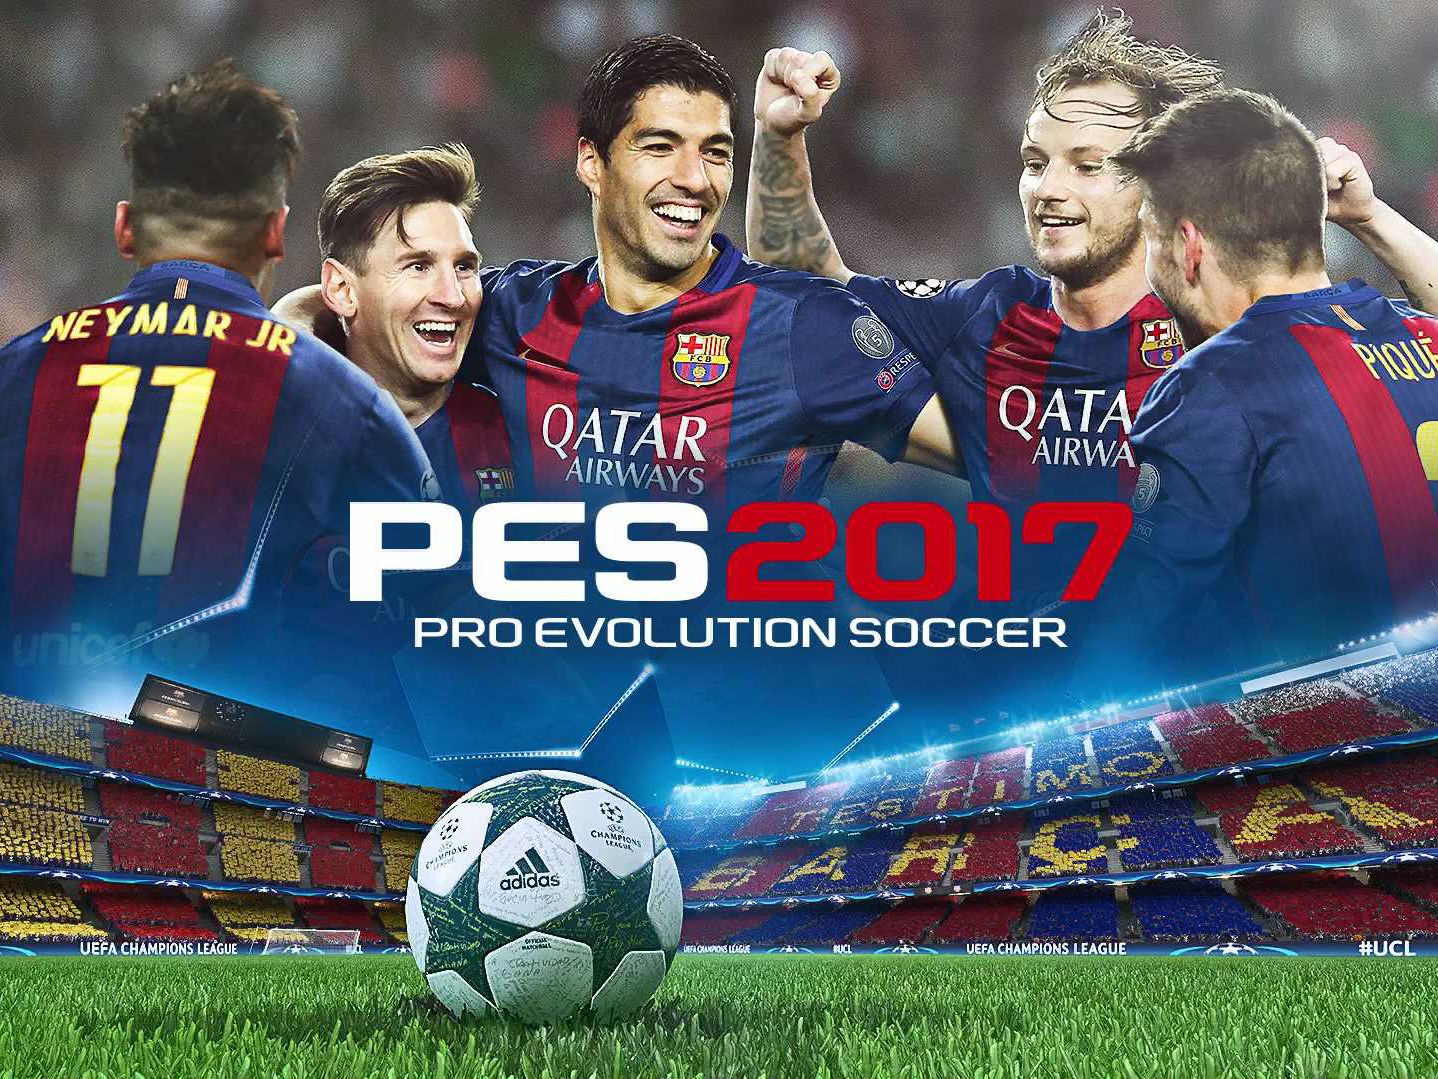 El videojuego fue superado significativamente en ventas por 'FIFA 17'.